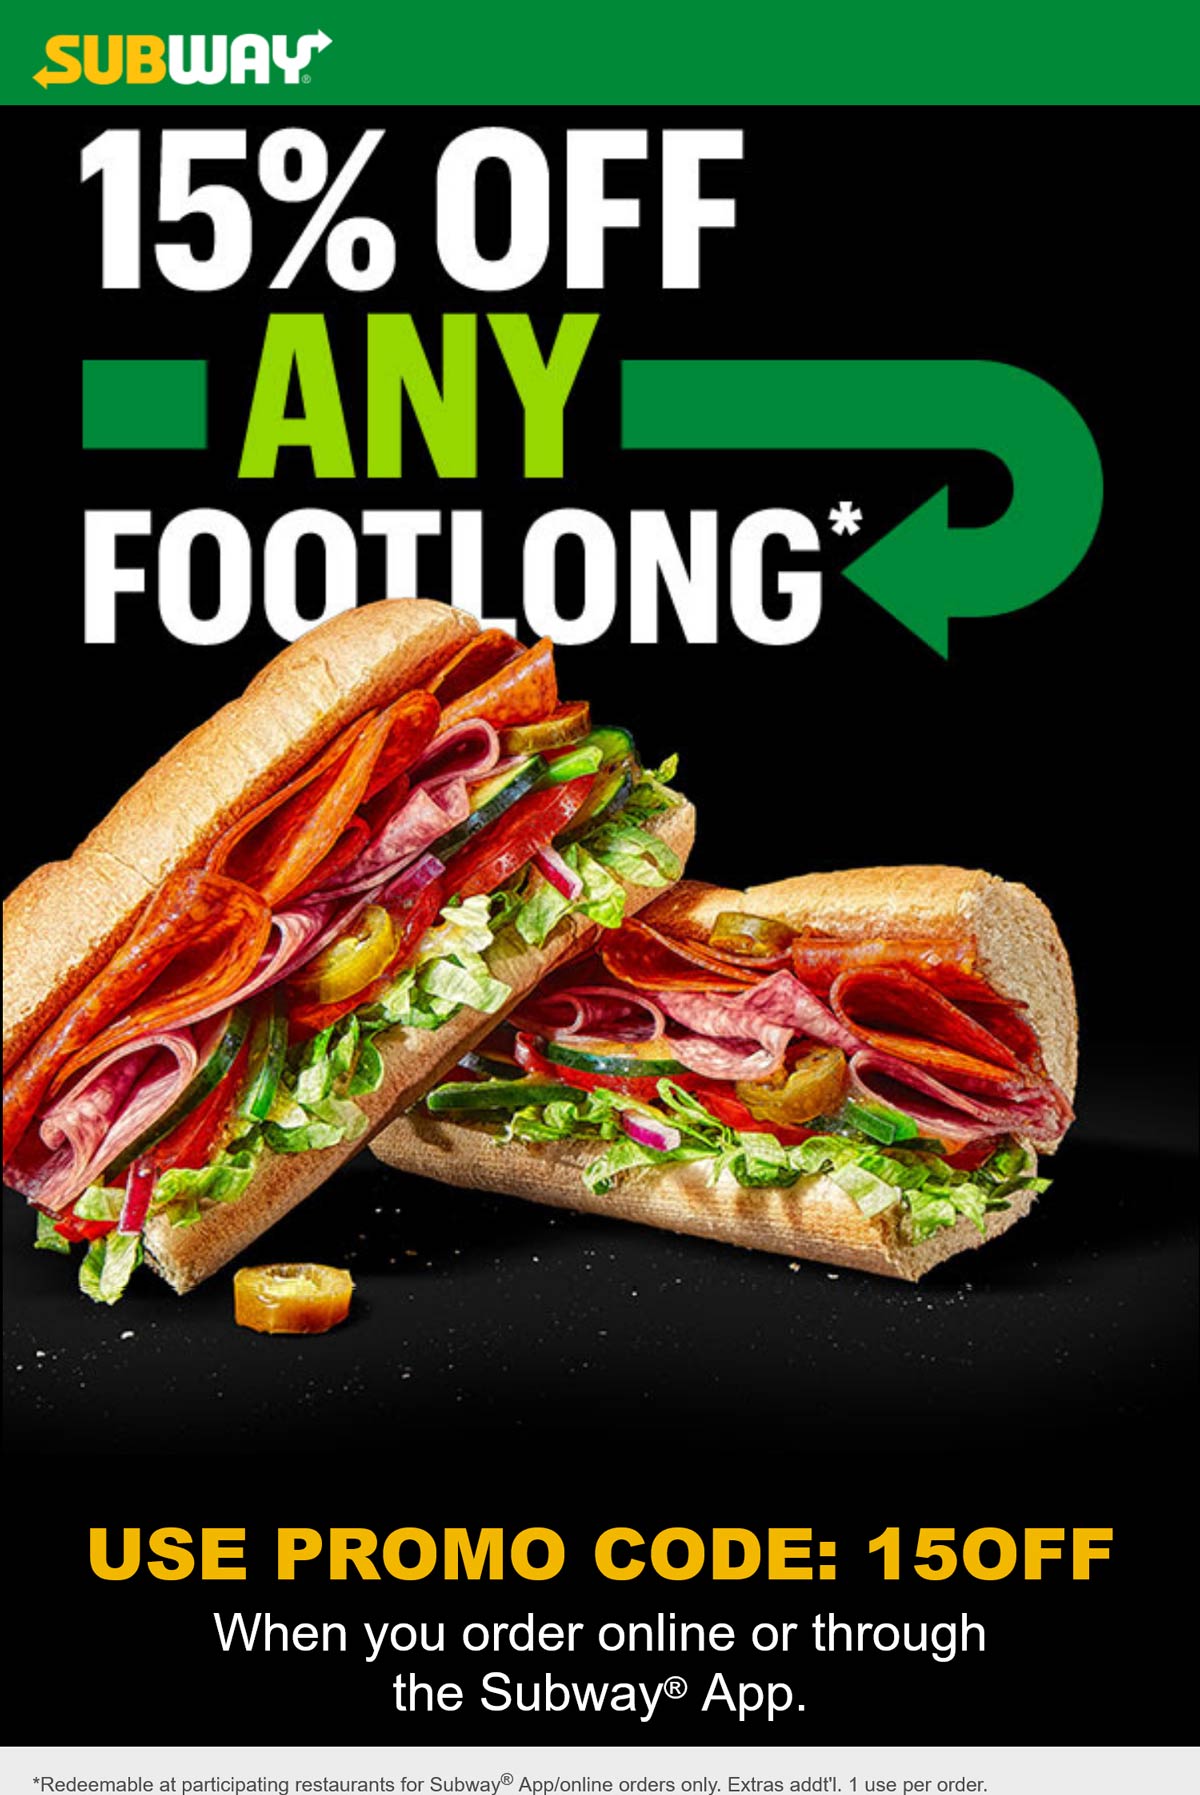 Subway restaurants Coupon  15% off any footlong sandwich at Subway restaurants via promo code 15OFF #subway 